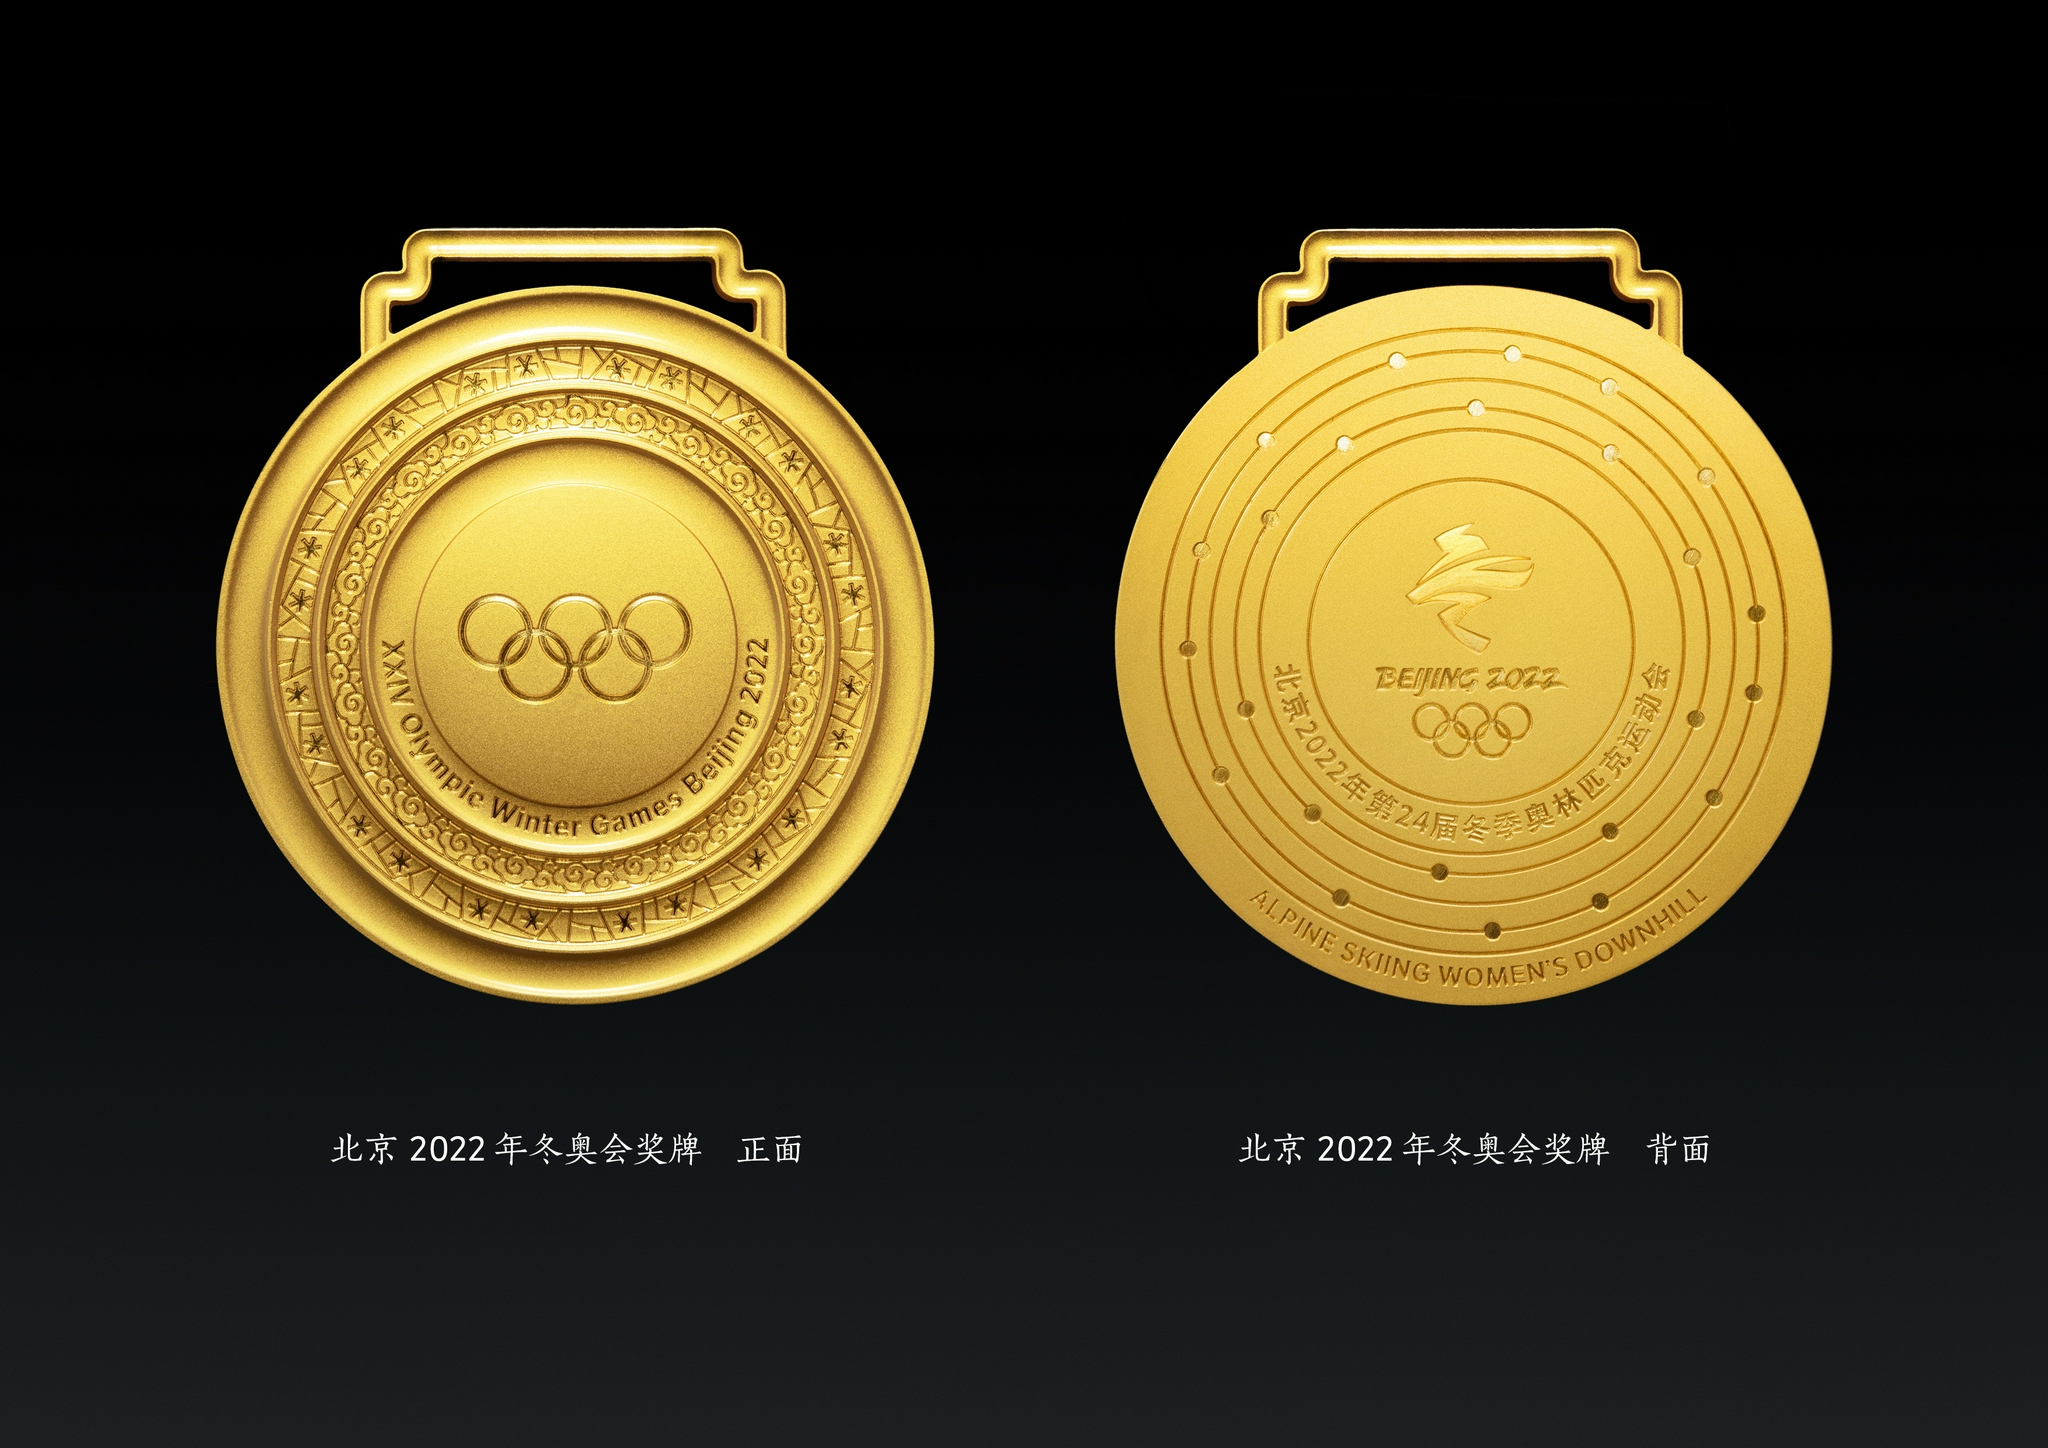 北京2022年冬奥会奖牌正面、背面图